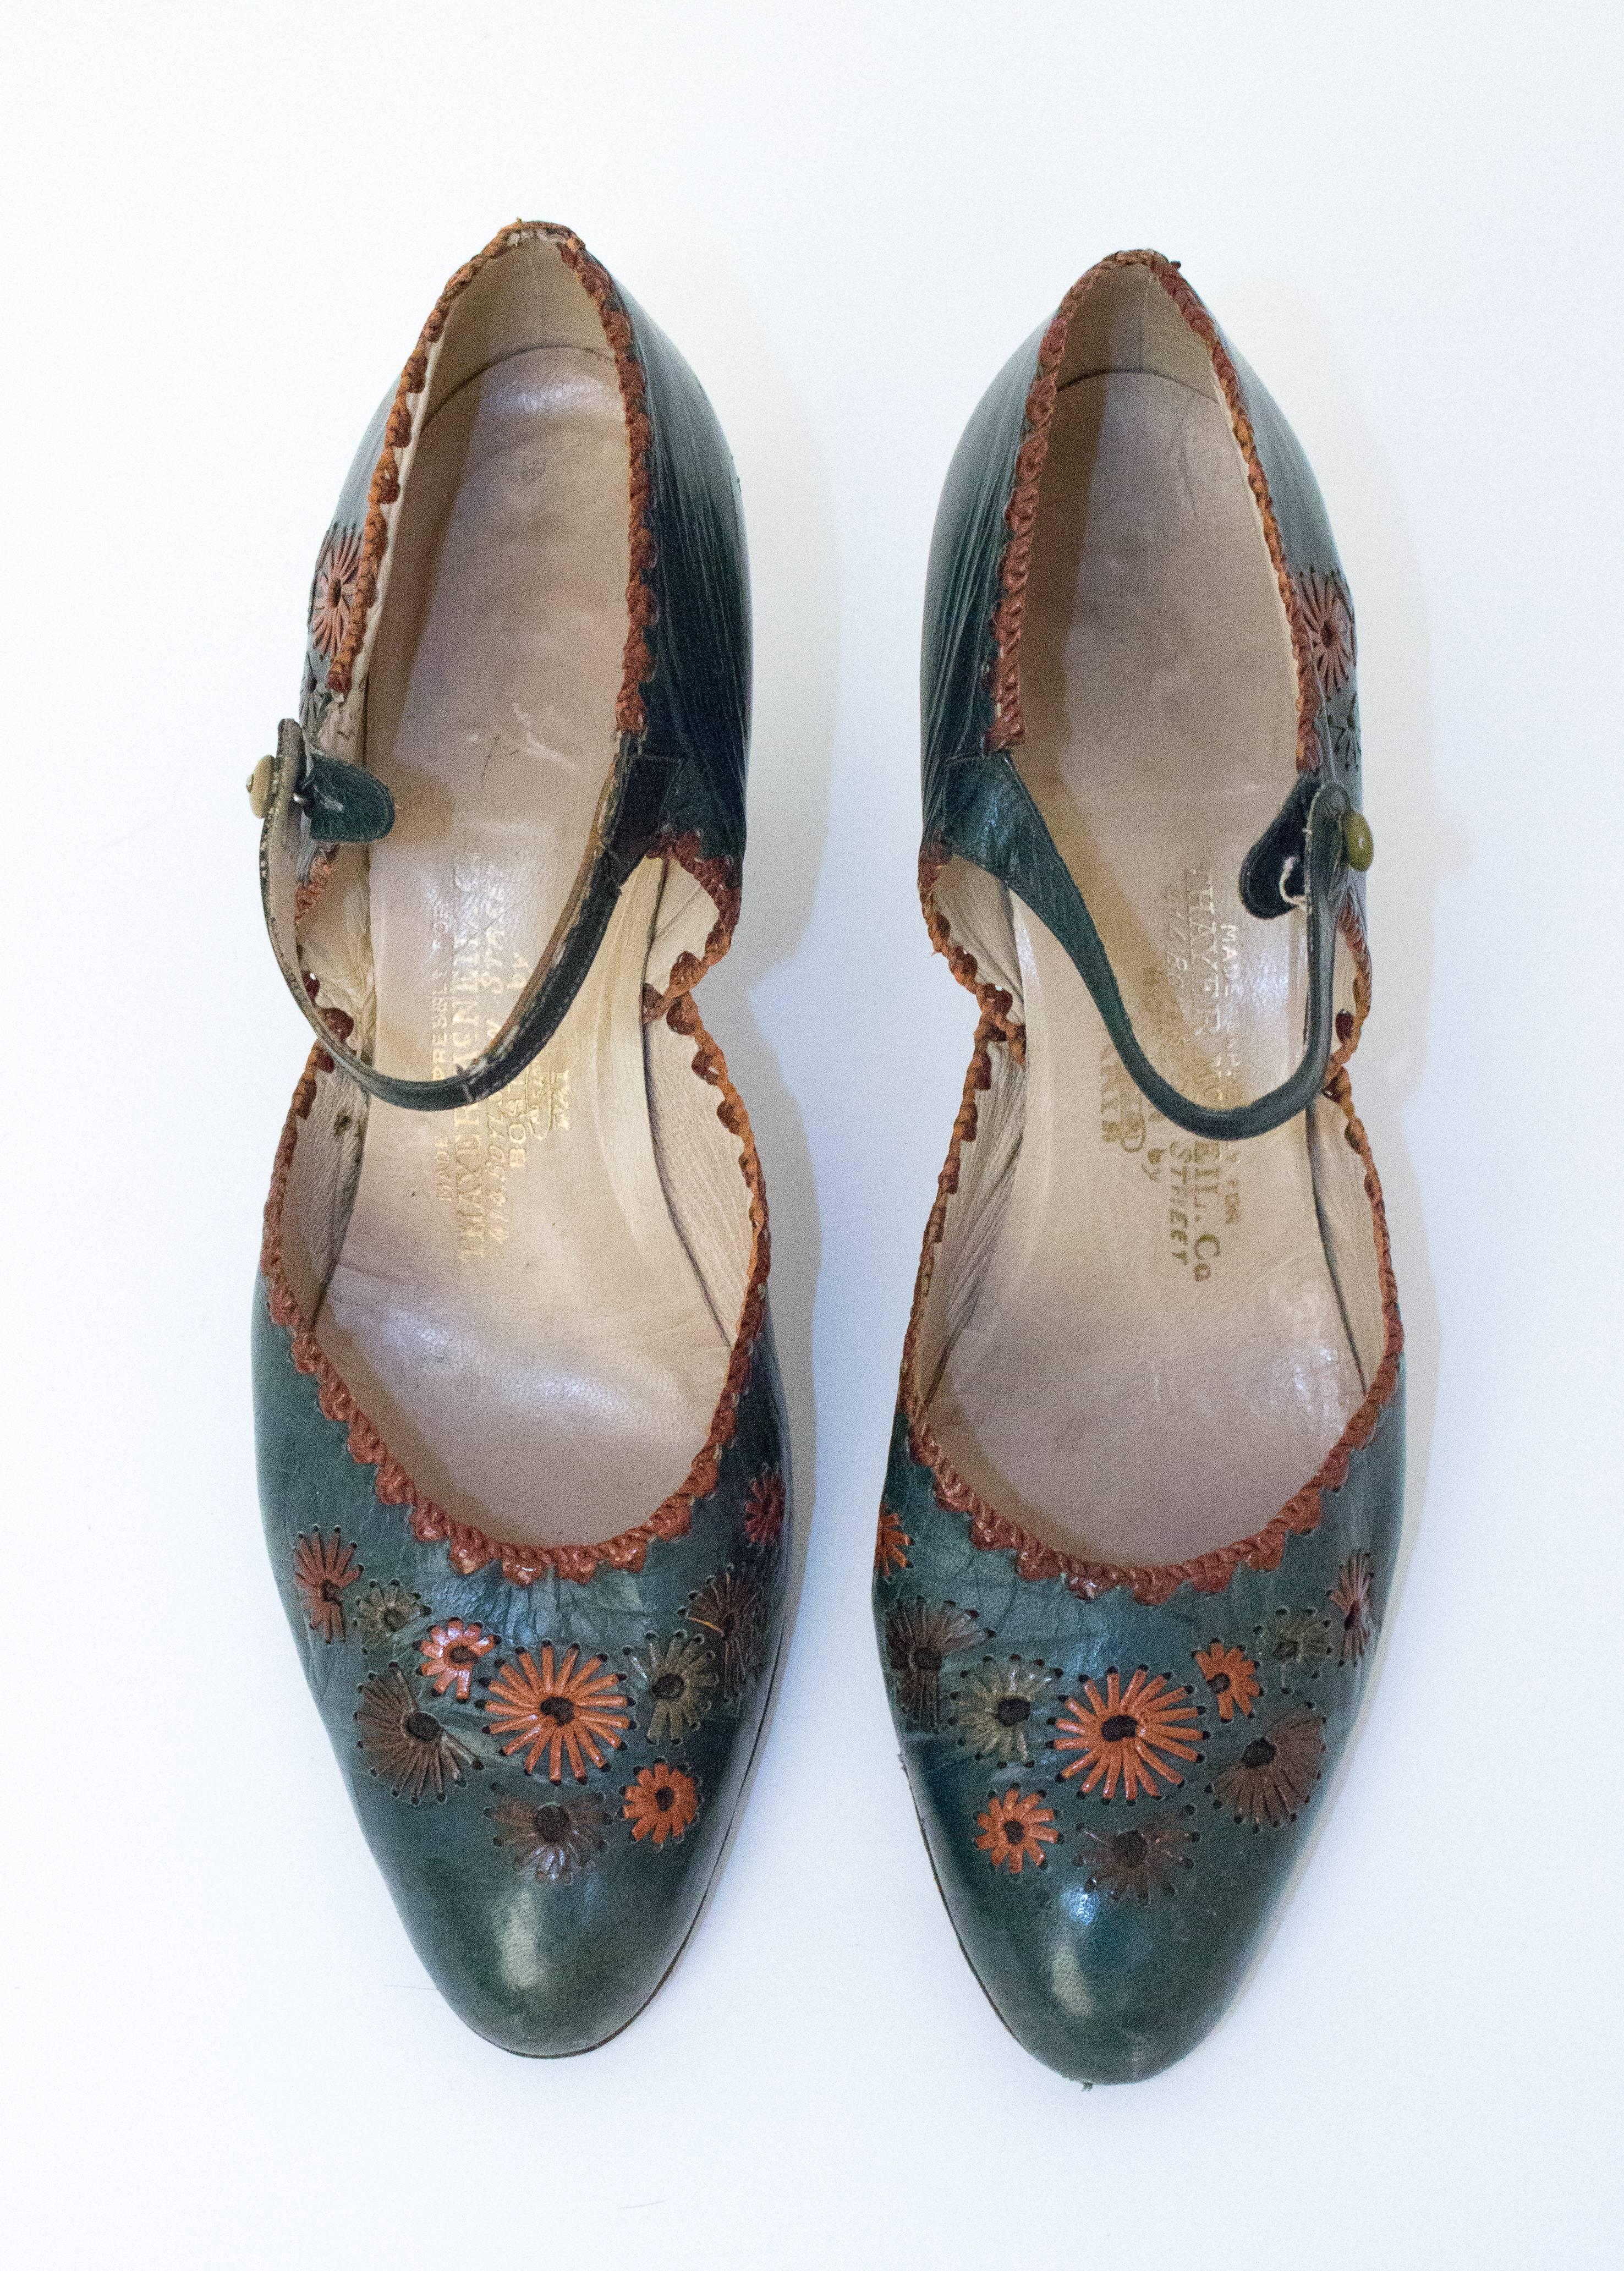 20er Jahre Mary Jane Heels aus grünem Leder mit floralen Verzierungen. Sohlen aus Leder. Knöpfe aus Bakelit. 

Abmessungen:
Einlegesohle: 9 1/2